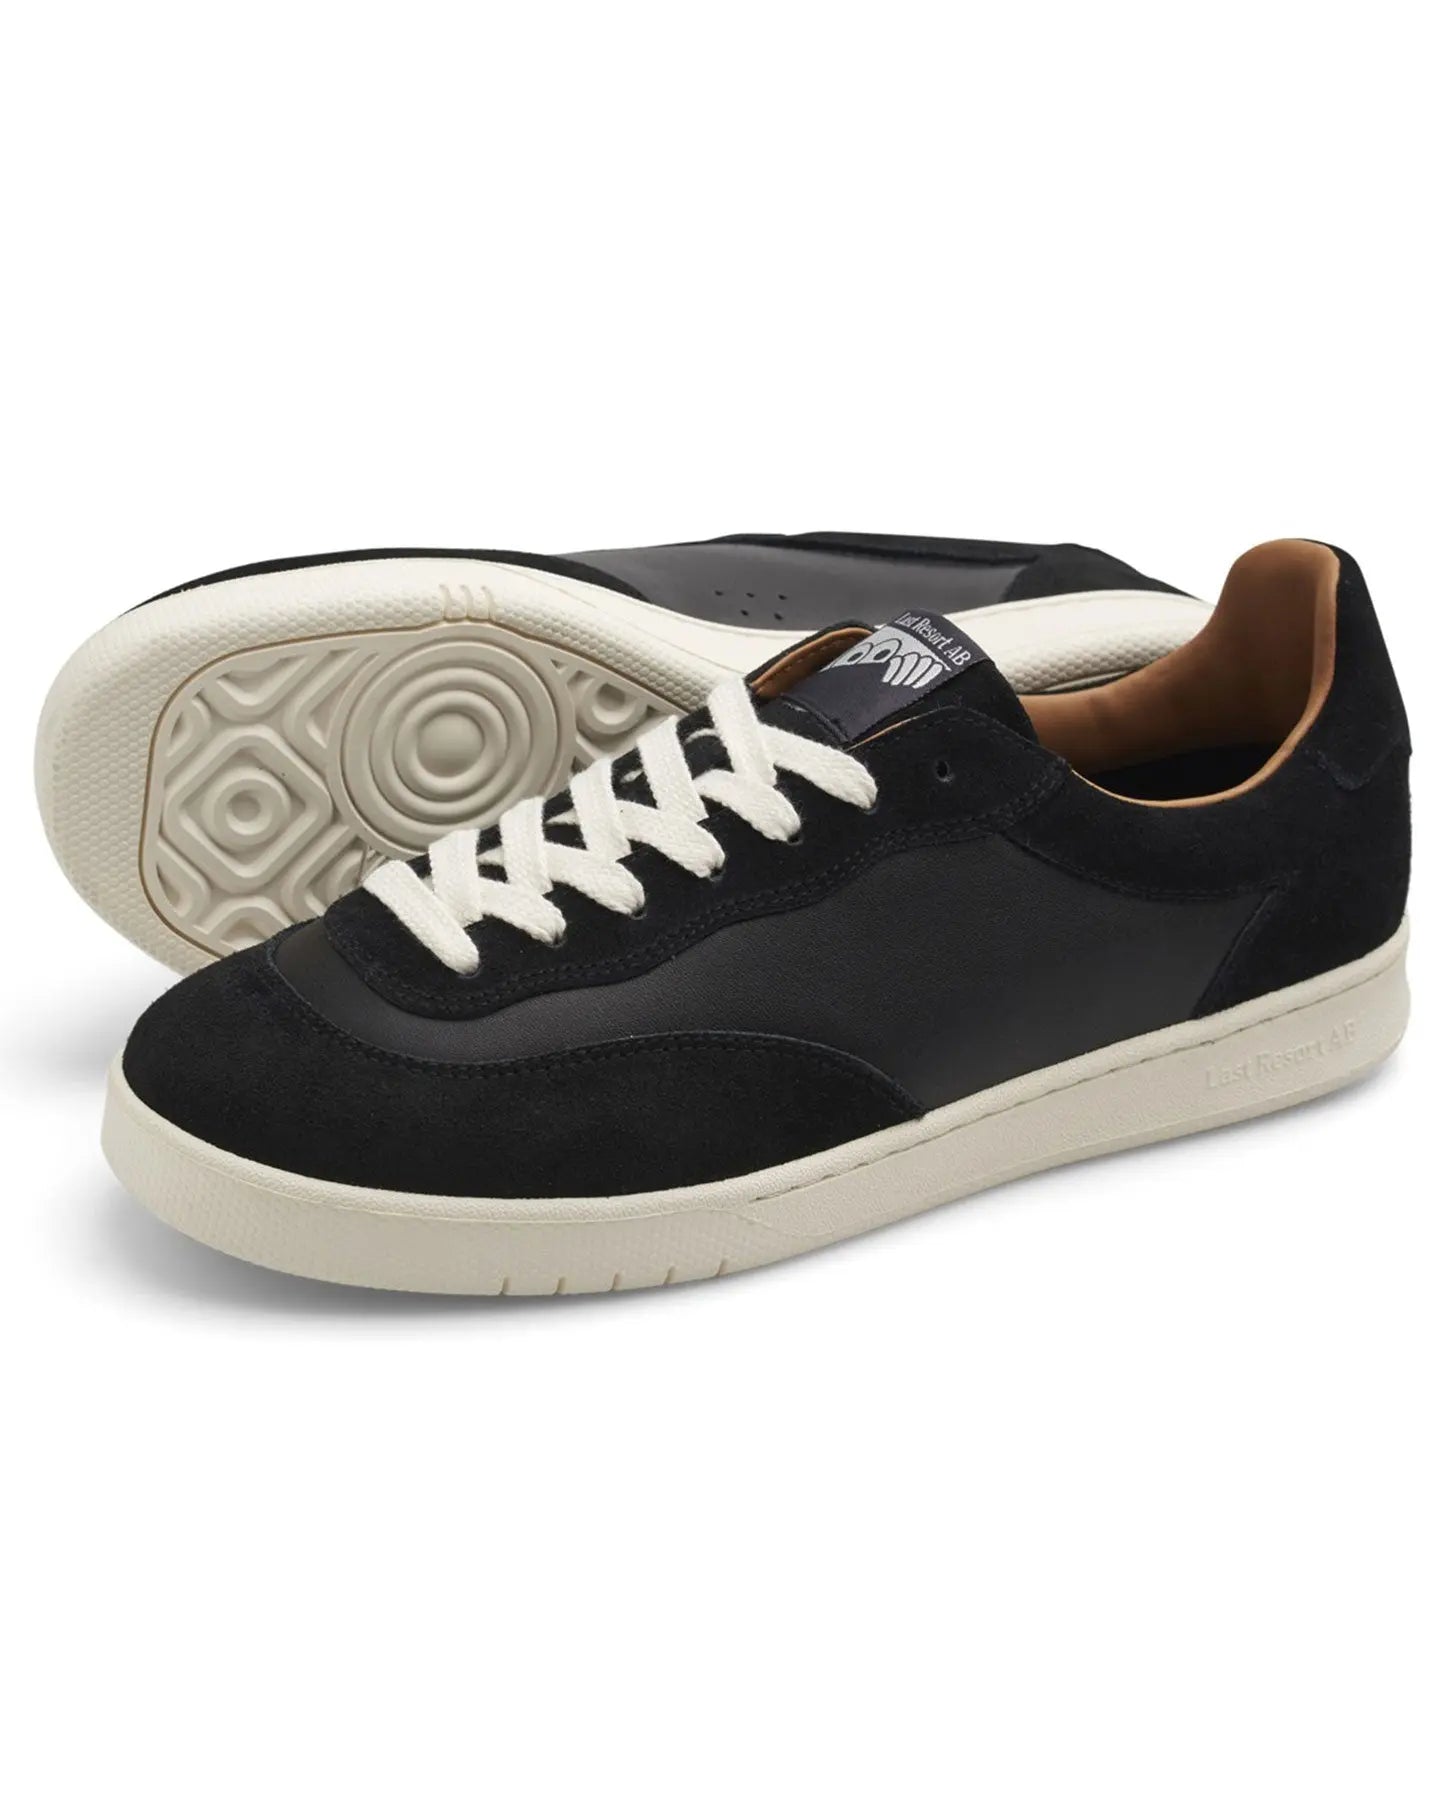 Last Resort CM001 - Black / White Footwear